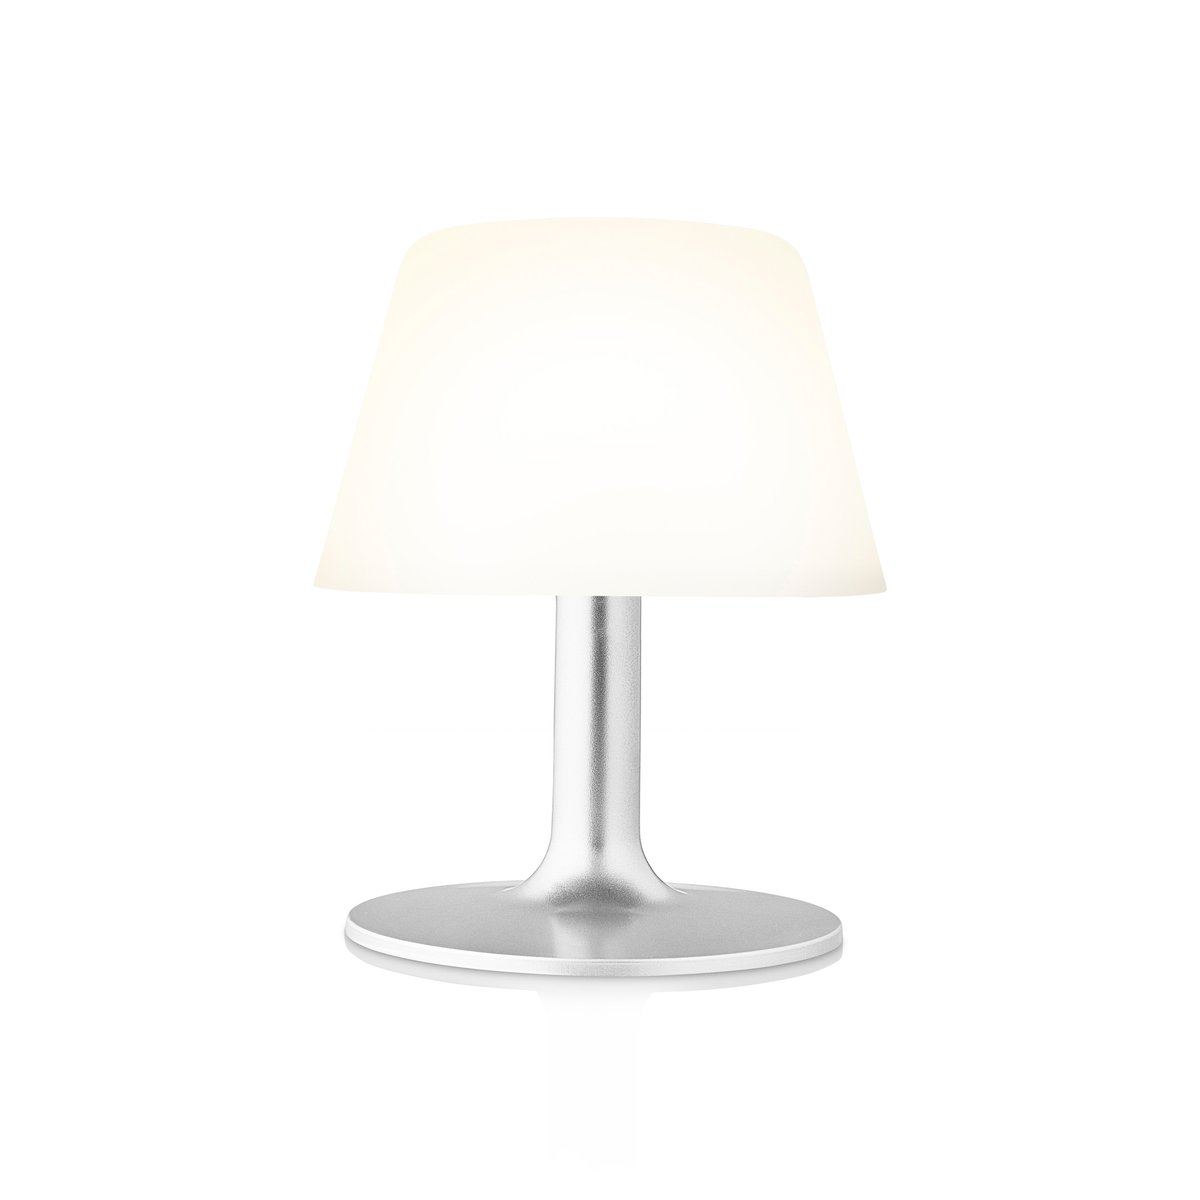 Eva Solo SunLight bordlampe 16 cm (5706631214742)